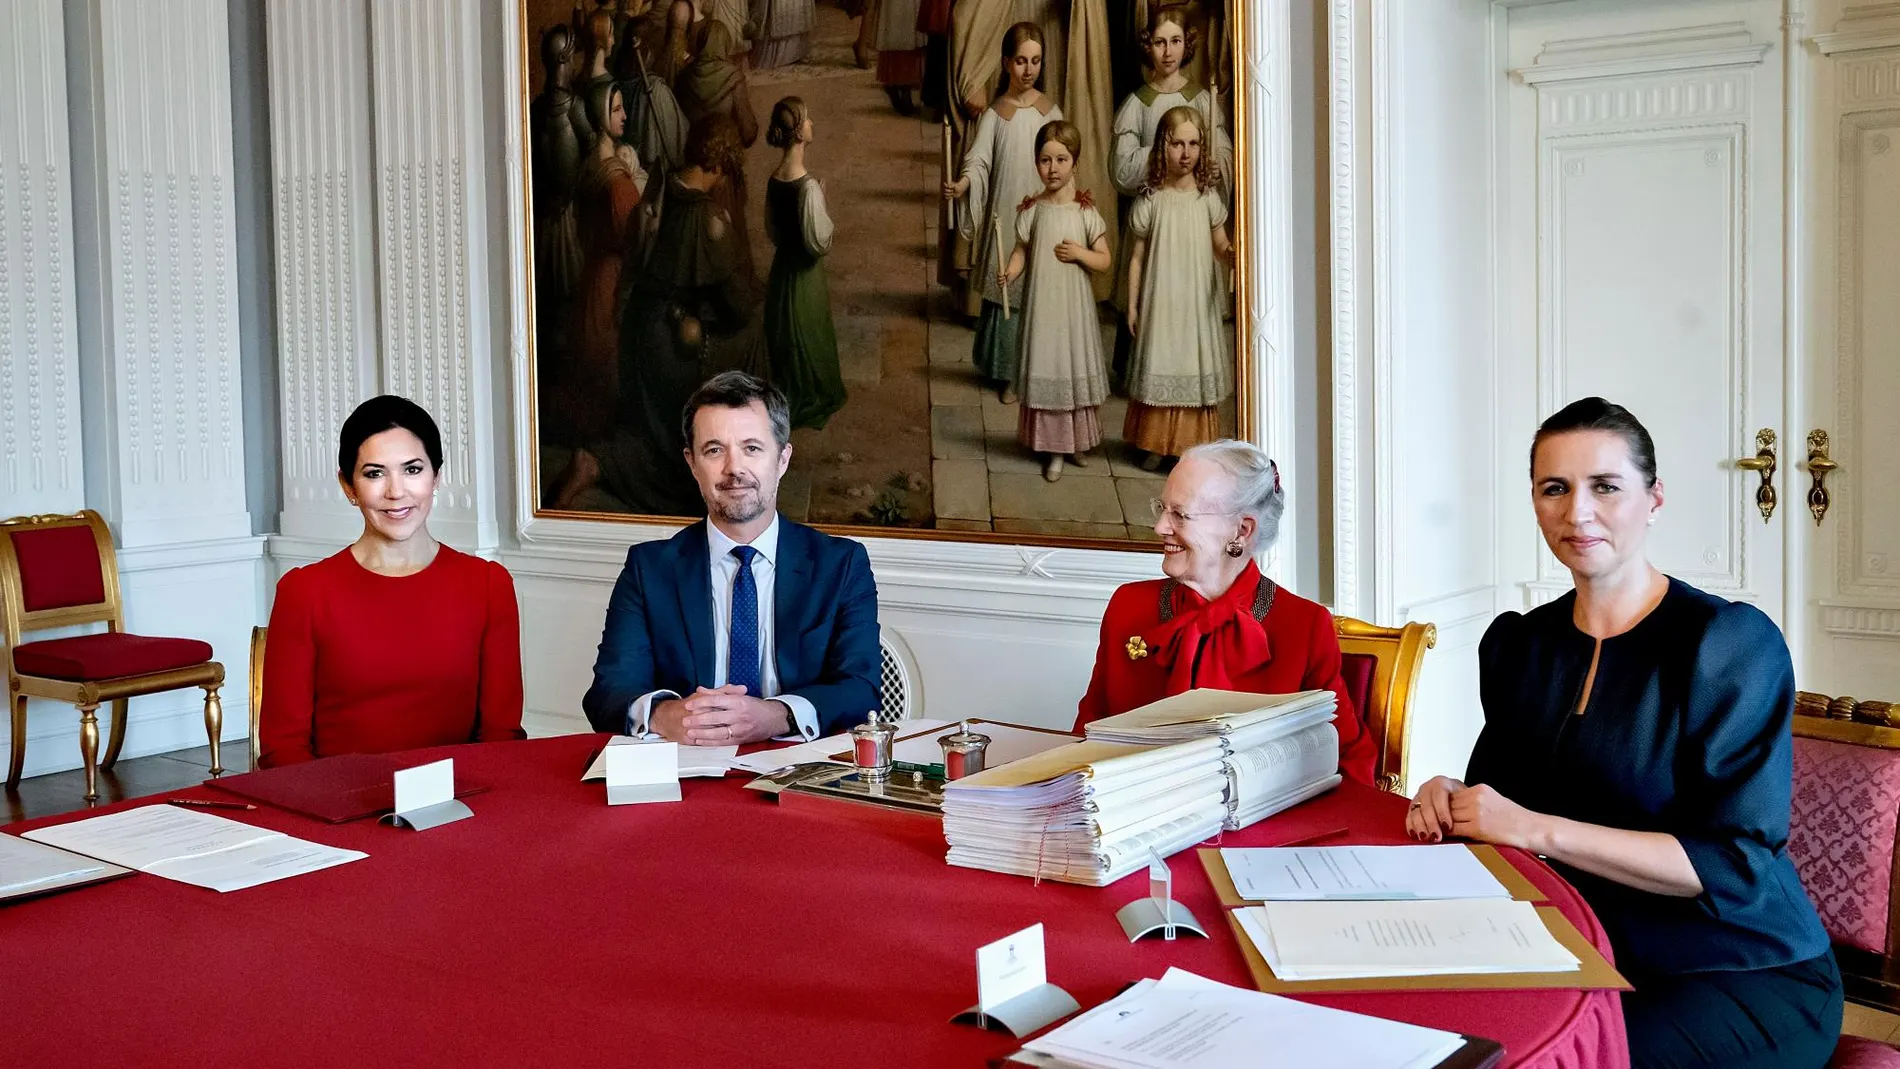 De izquierda a derecha, la princesa Mary de Dinamarca, junto a su marido el príncipe heredero, Federico, al lado de la reina Margarita II y la primera ministra Mette Frederiksen, durante el Consejo del Reino.